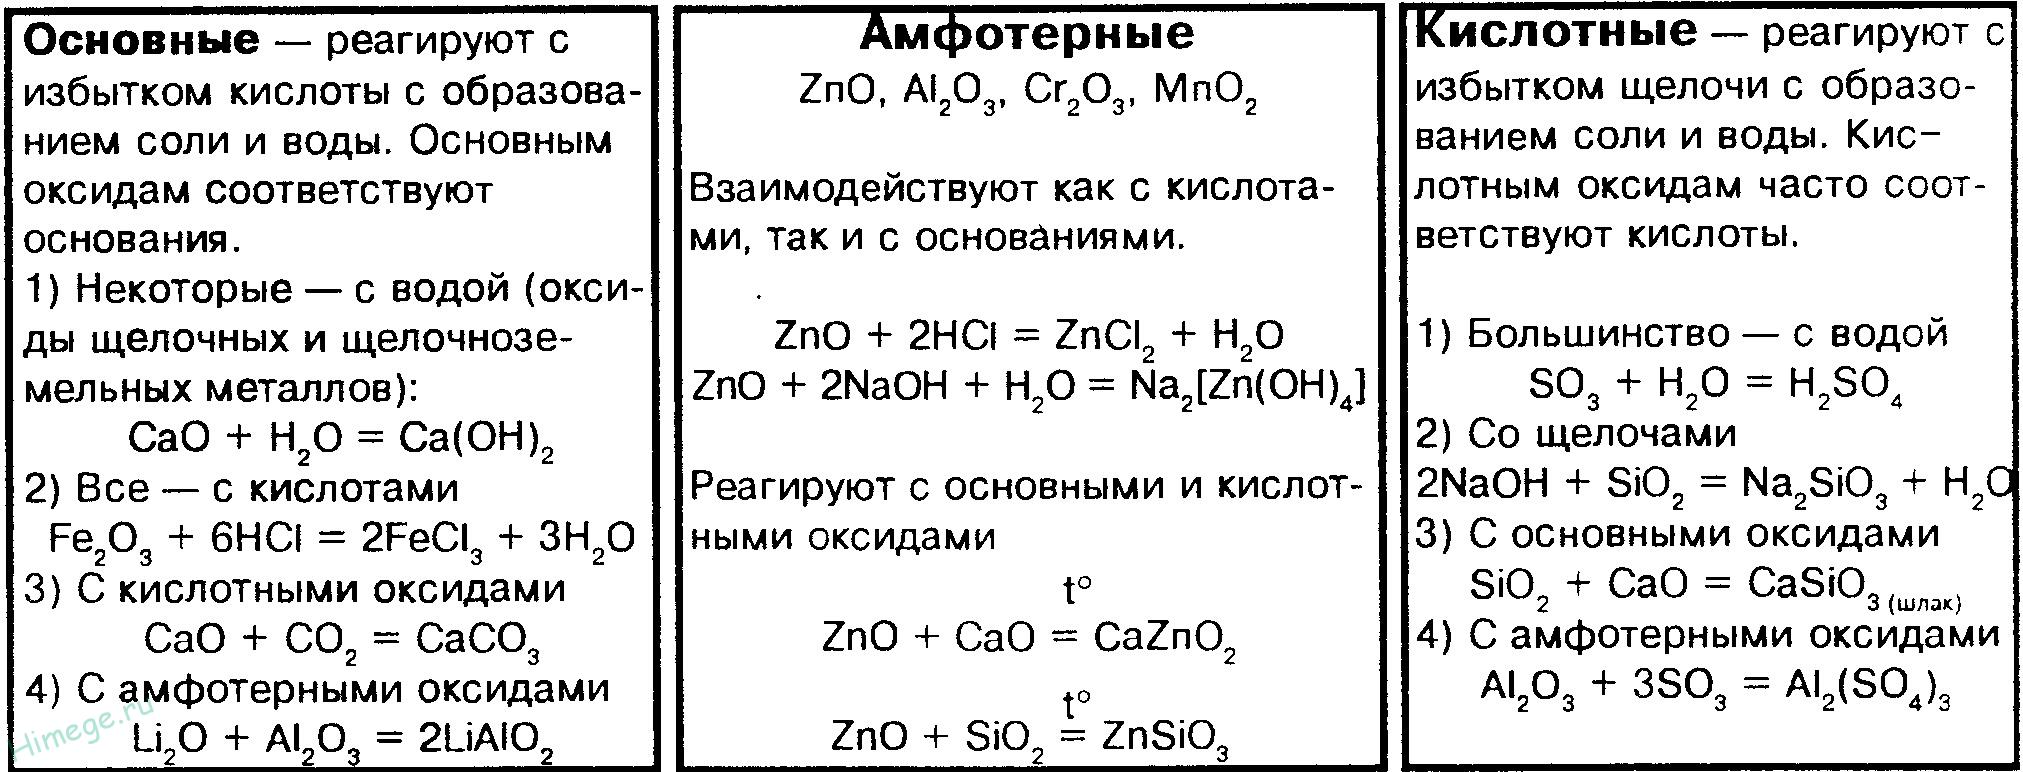 Основные оксиды, перечень, список, физические и химические свойства